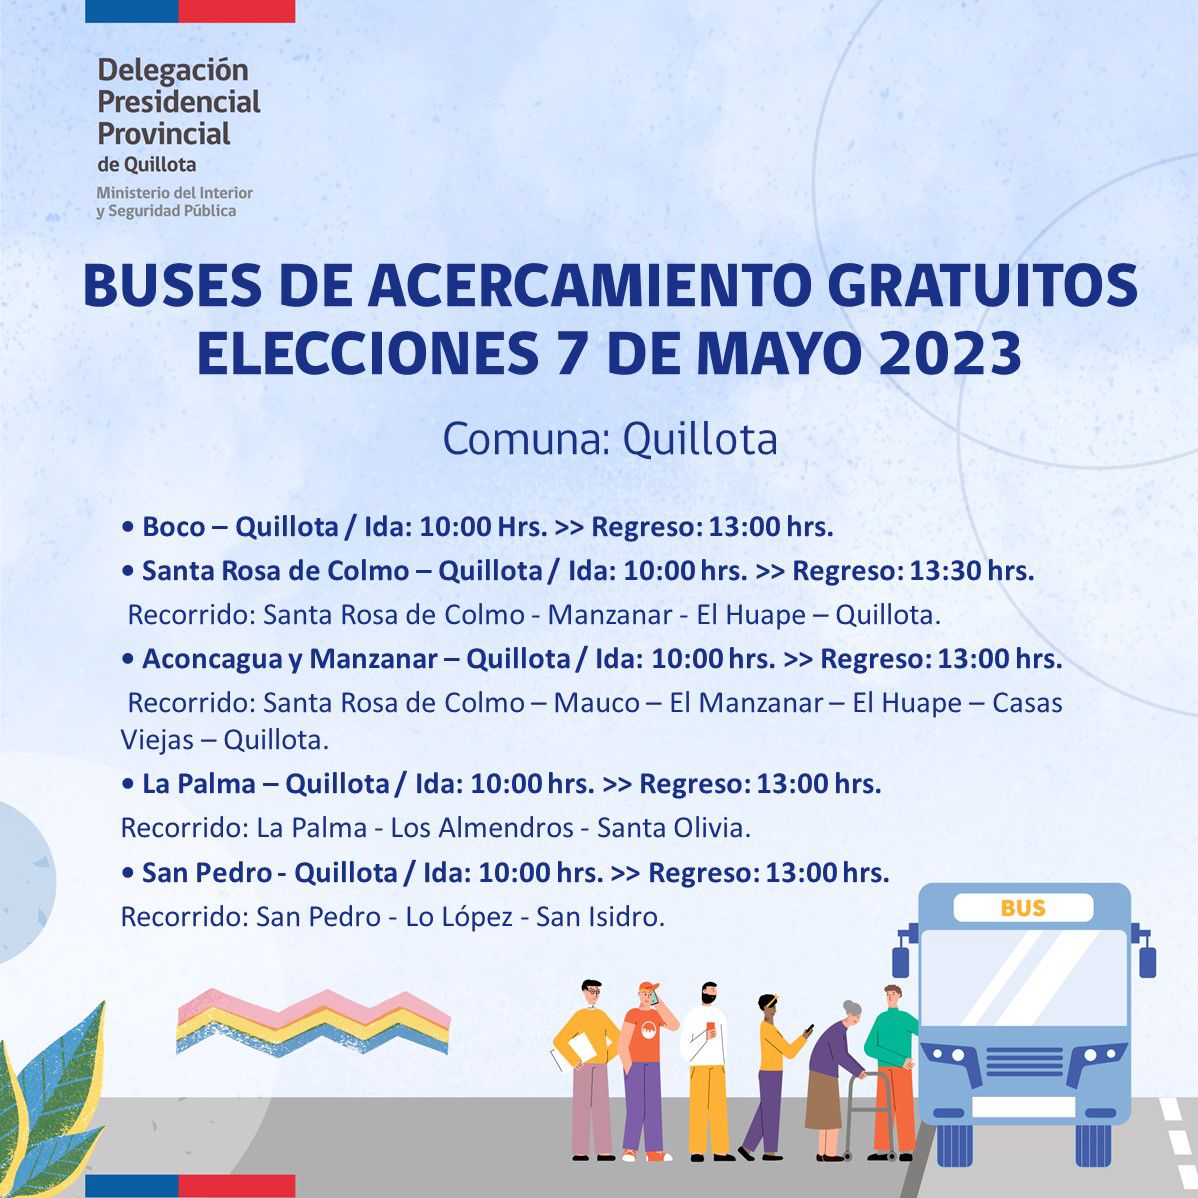 Los recorridos gratuitos de buses para las elecciones de 7 mayo en Quillota